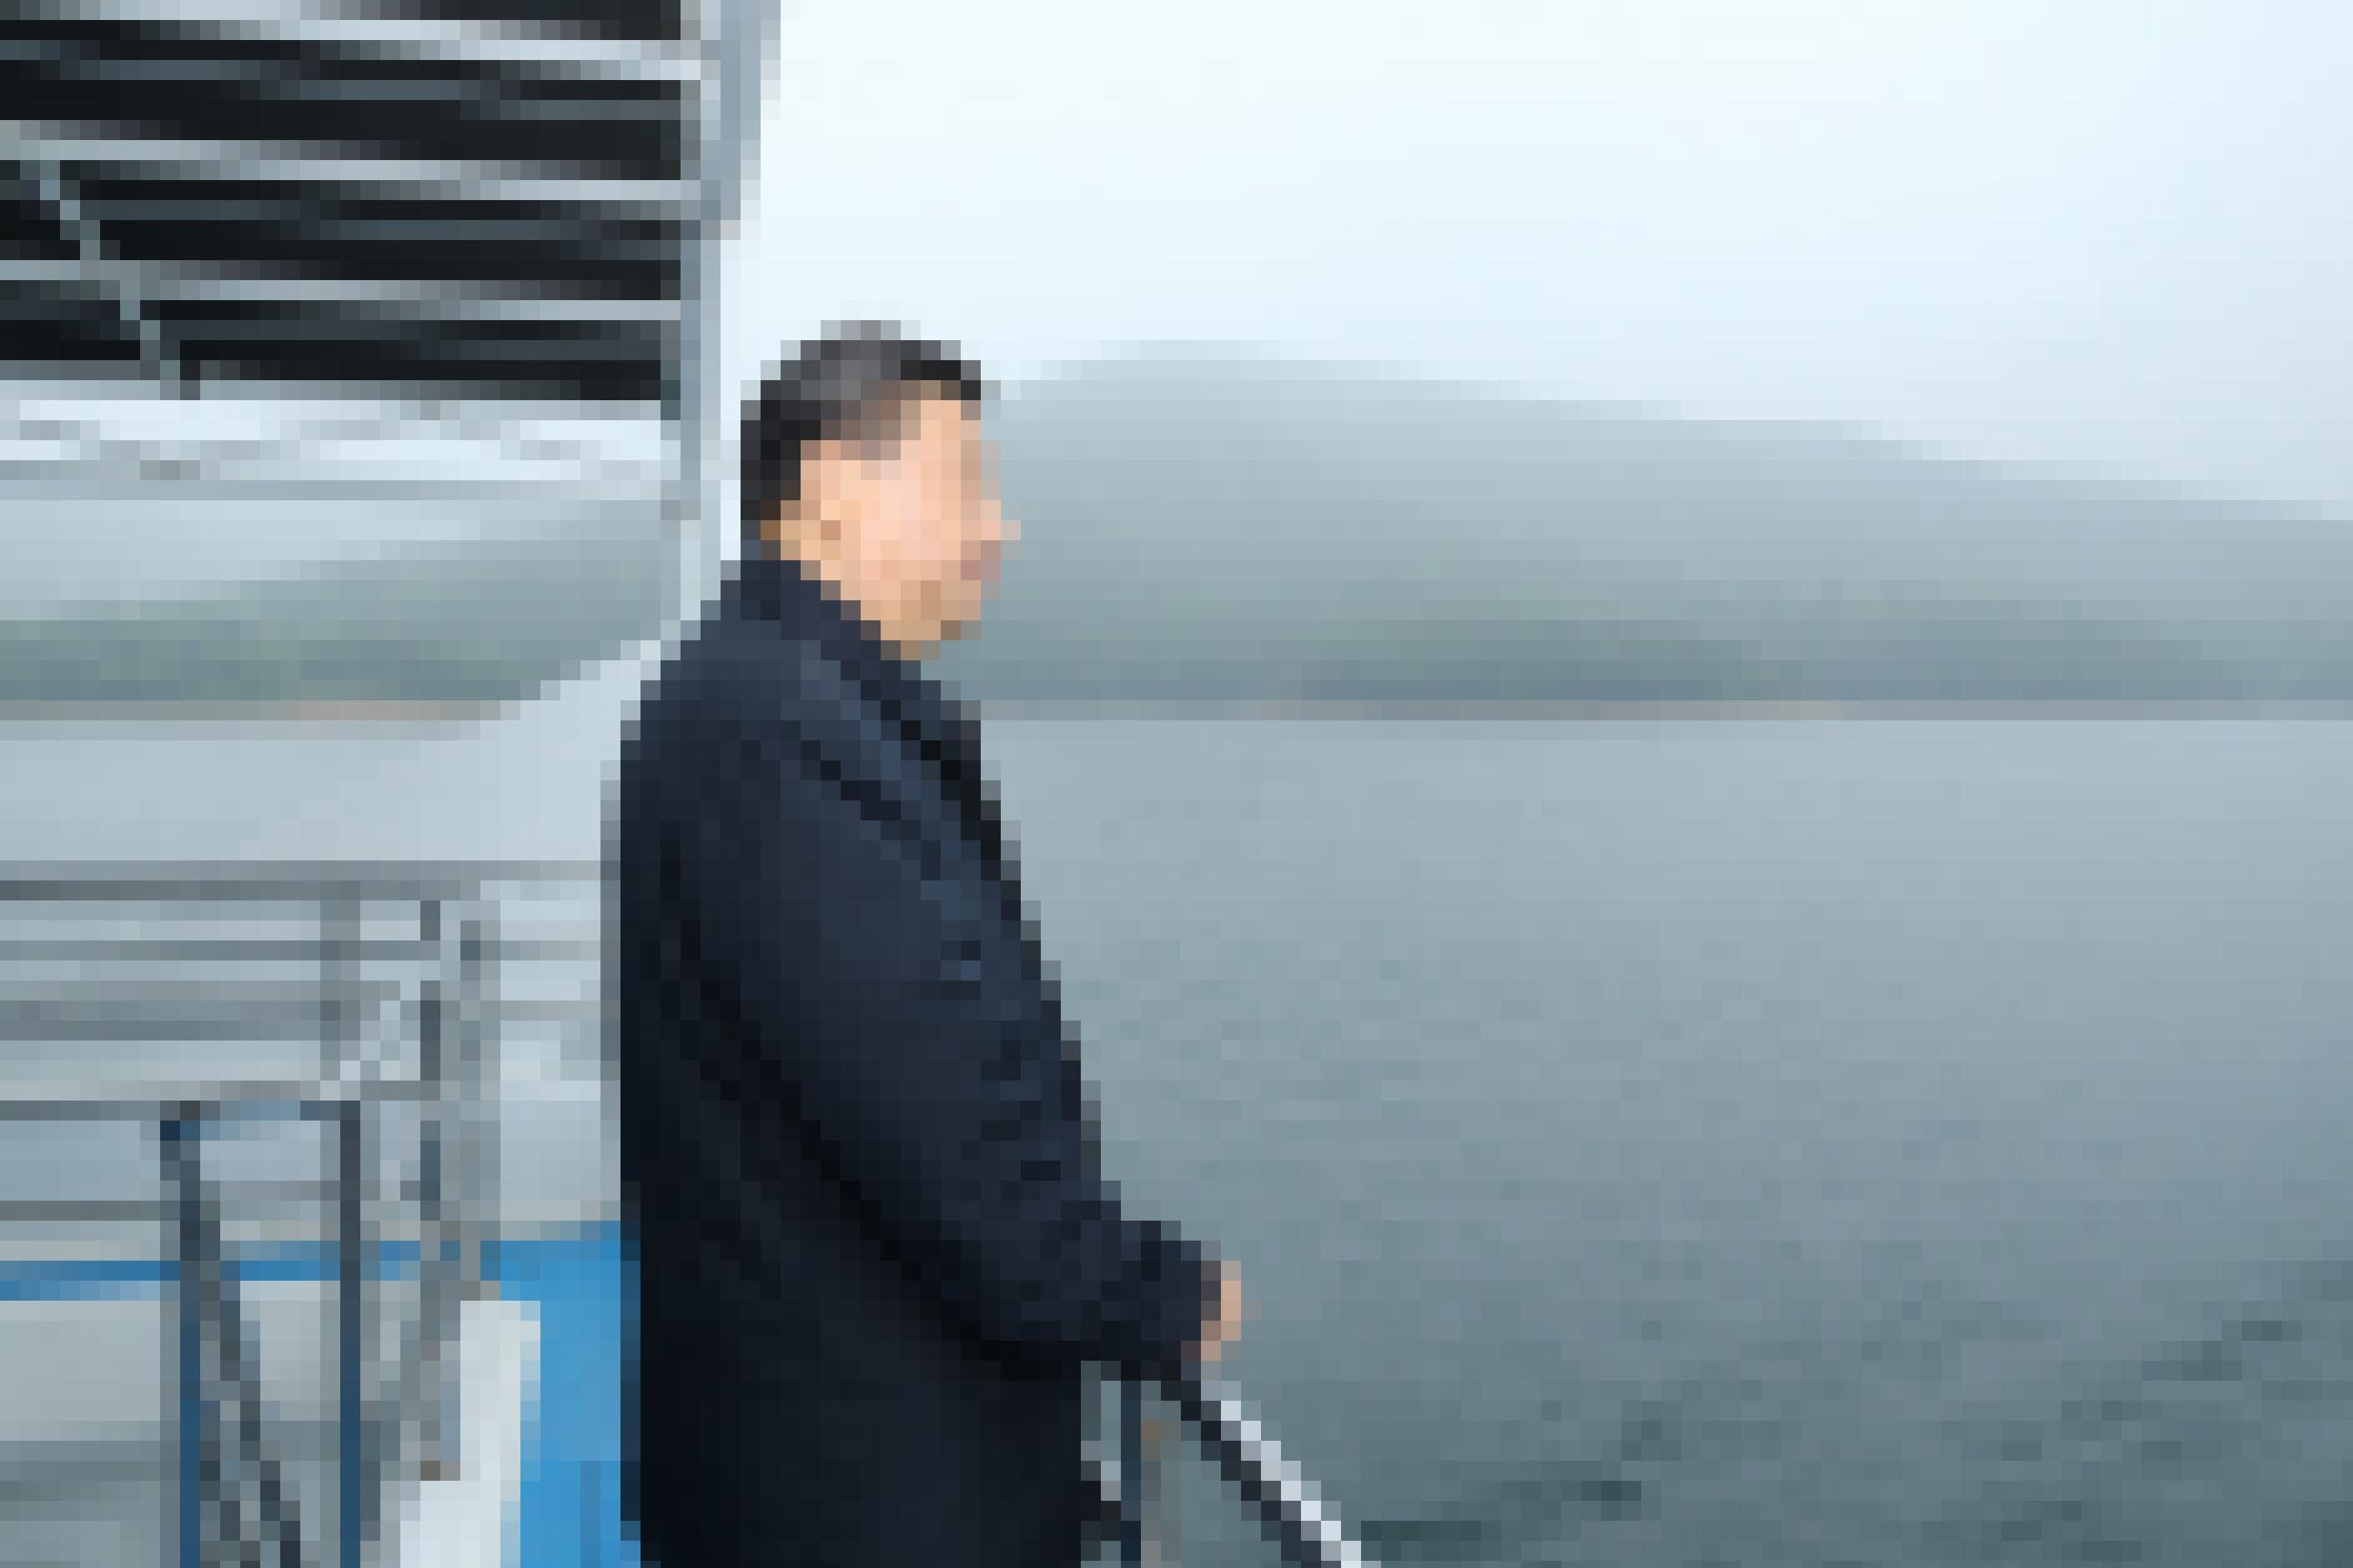 Xi Jinping steht an der Reling eines Bootes und schaut auf einen See.